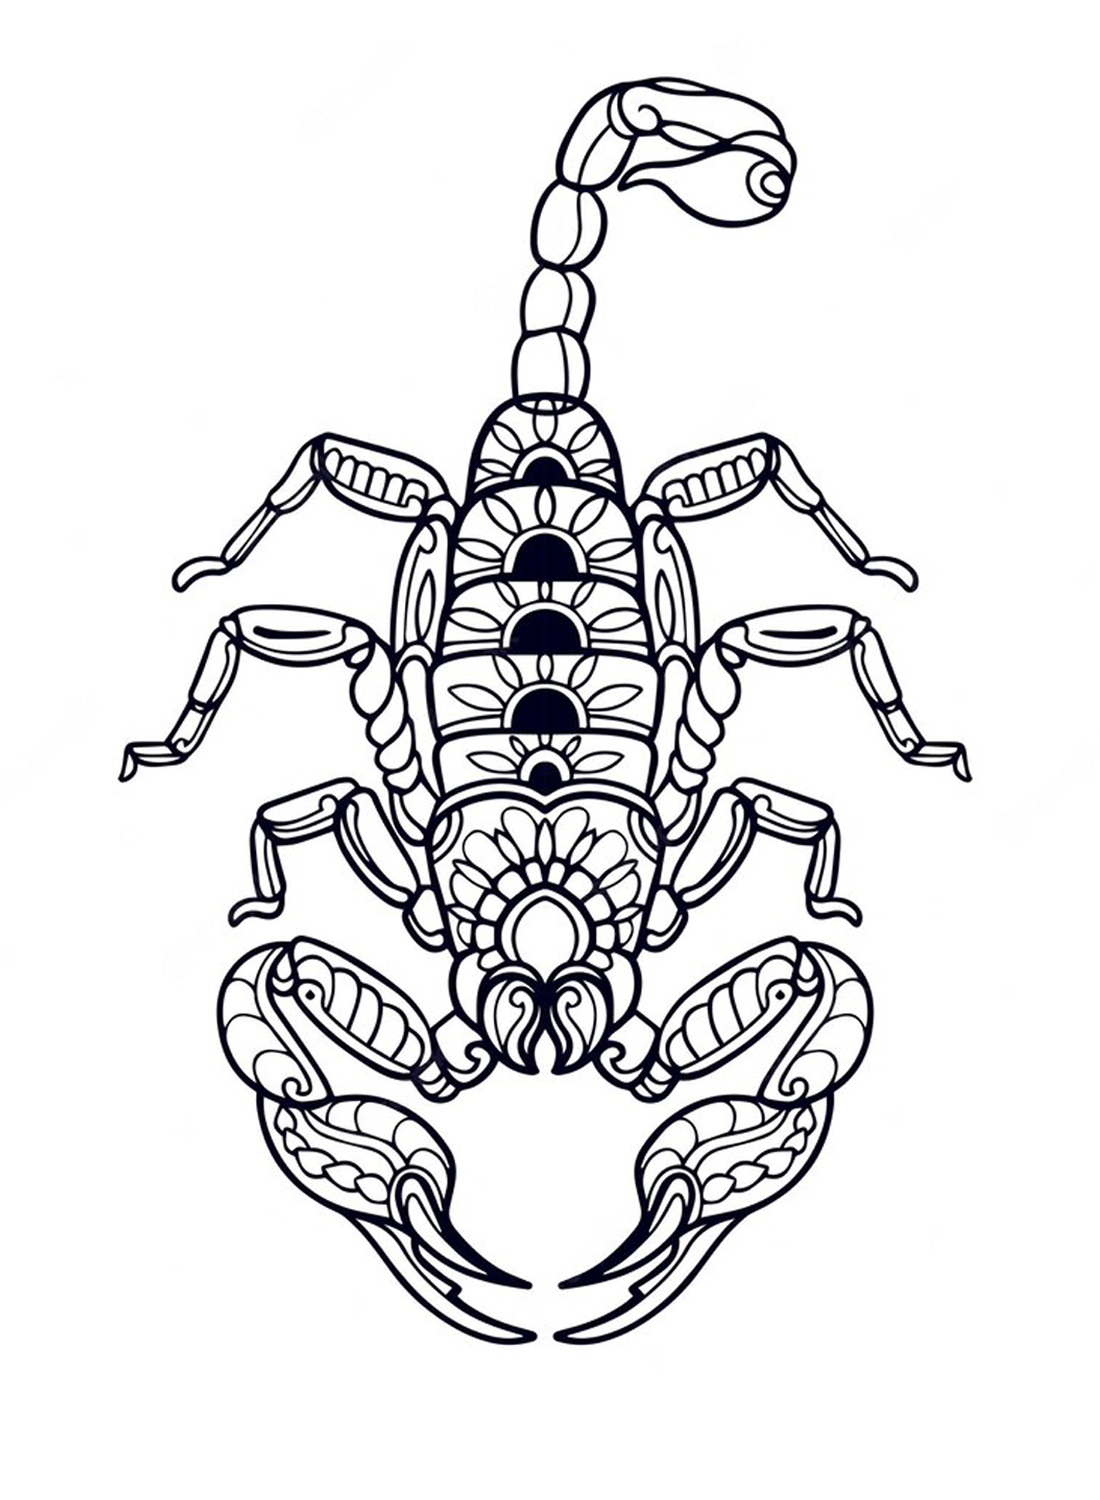 Un escorpión gigante de Scorpions